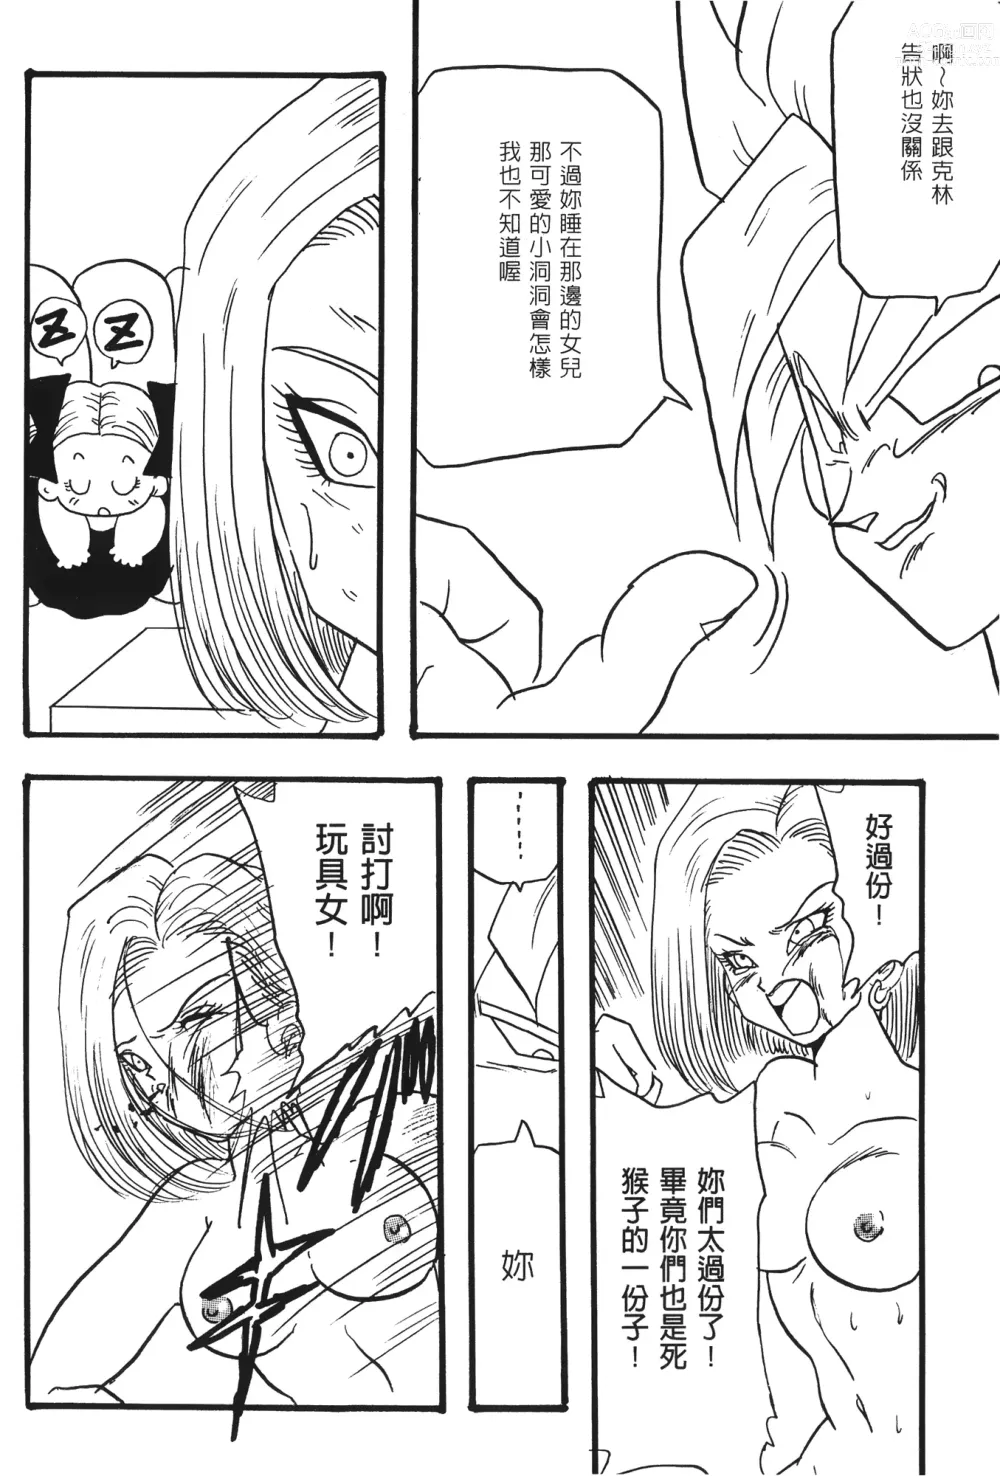 Page 7 of doujinshi ドラゴンパール 02